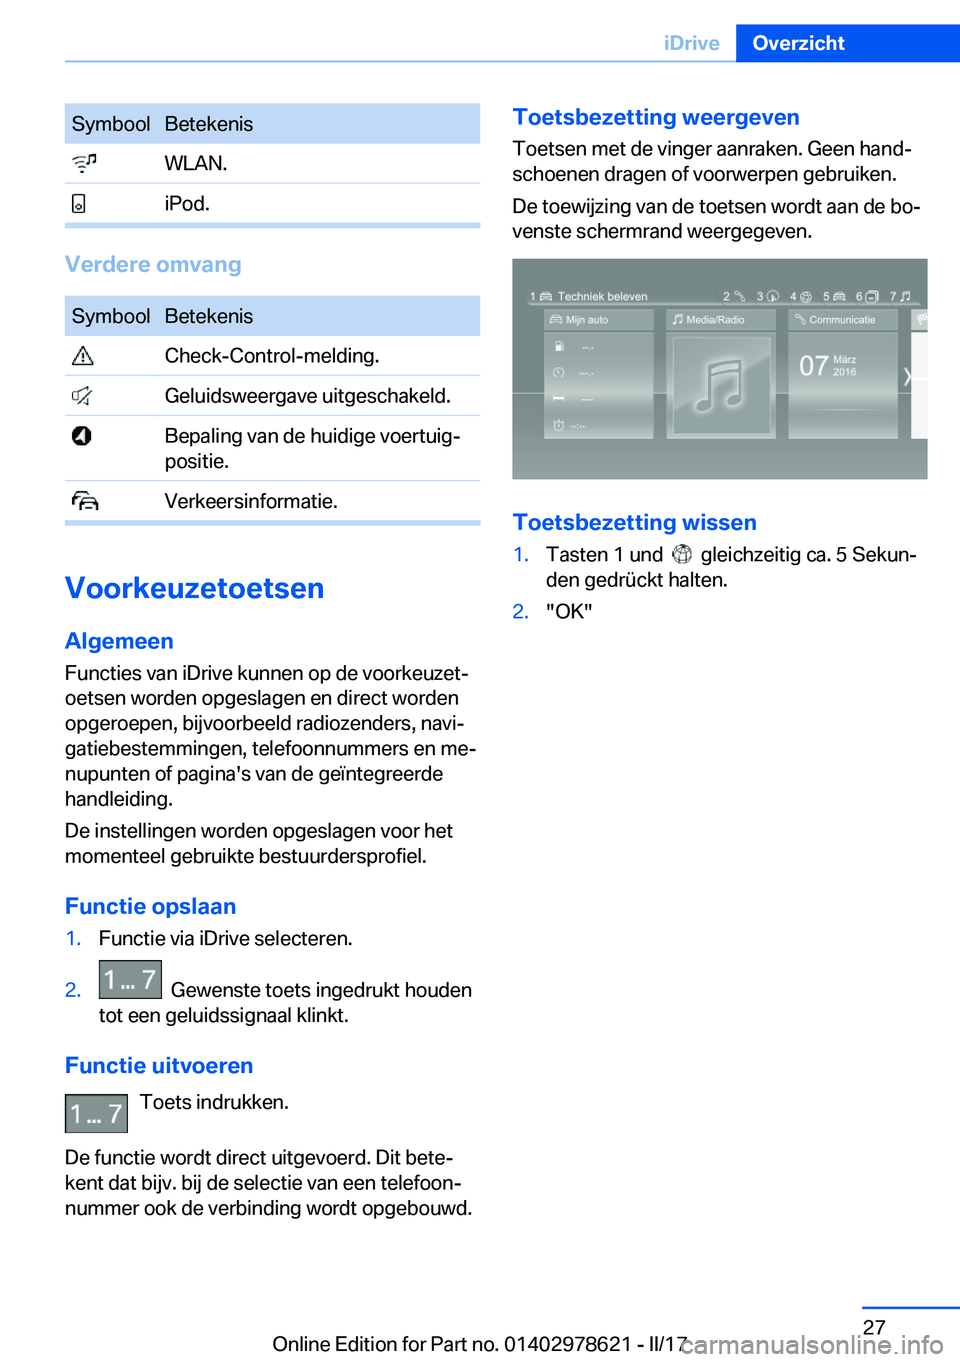 BMW 7 SERIES 2018  Instructieboekjes (in Dutch) �S�y�m�b�o�o�l�B�e�t�e�k�e�n�i�s� �W�L�A�N�.� �i�P�o�d�.
�V�e�r�d�e�r�e��o�m�v�a�n�g
�S�y�m�b�o�o�l�B�e�t�e�k�e�n�i�s� �C�h�e�c�k�-�C�o�n�t�r�o�l�-�m�e�l�d�i�n�g�.� �G�e�l�u�i�d�s�w�e�e�r�g�a�v�e� �u